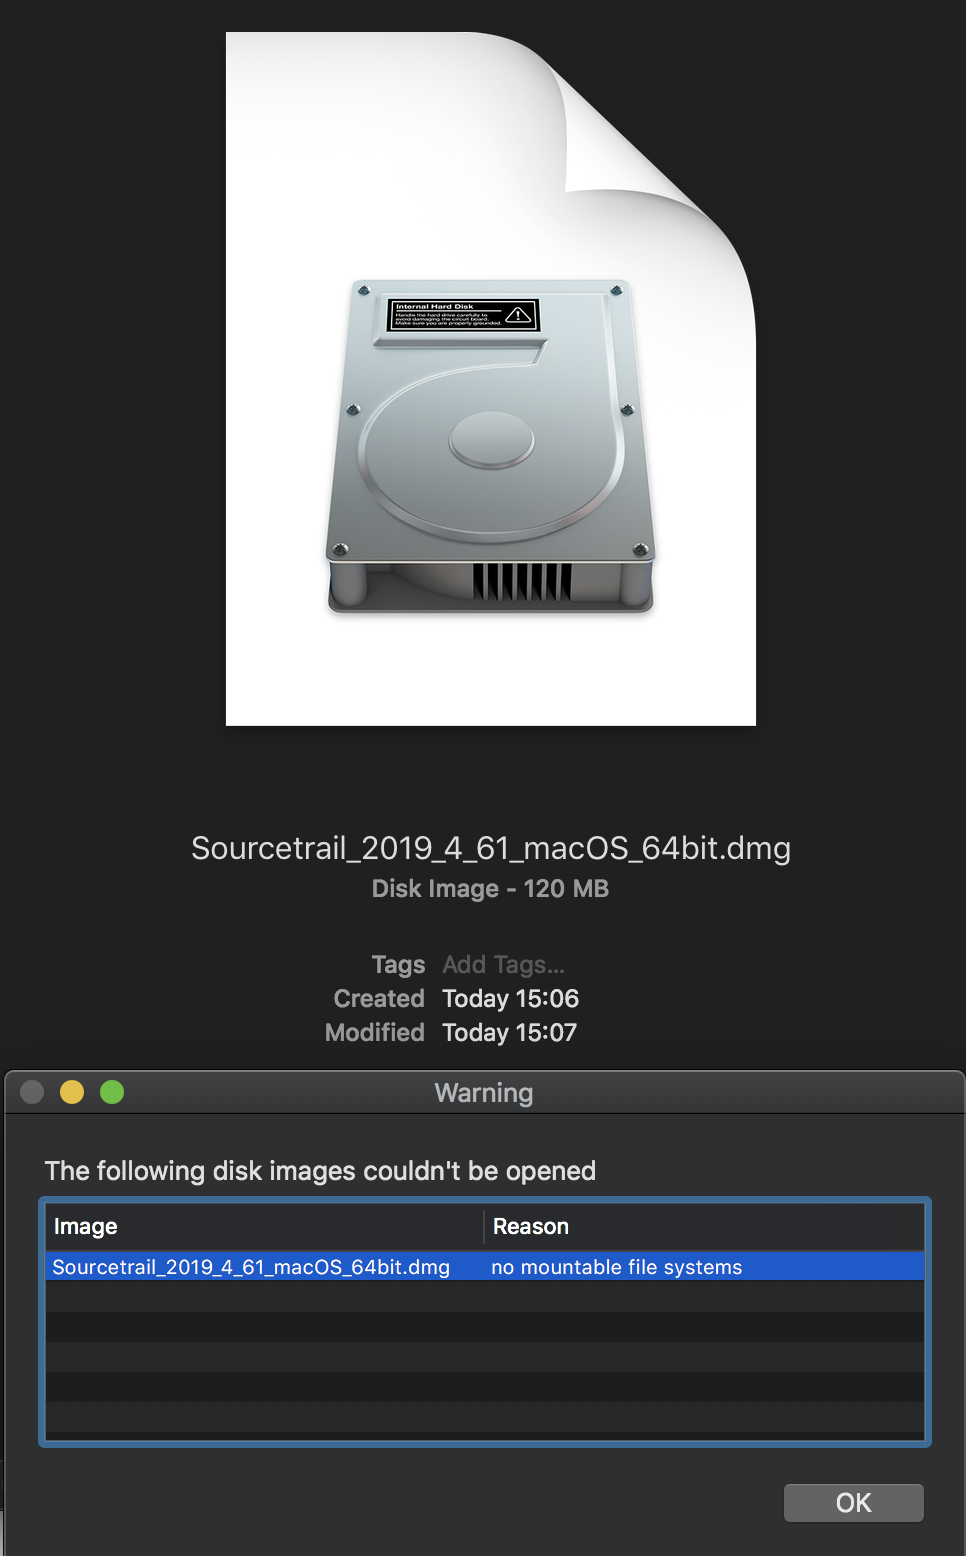 mac disc image mounter won